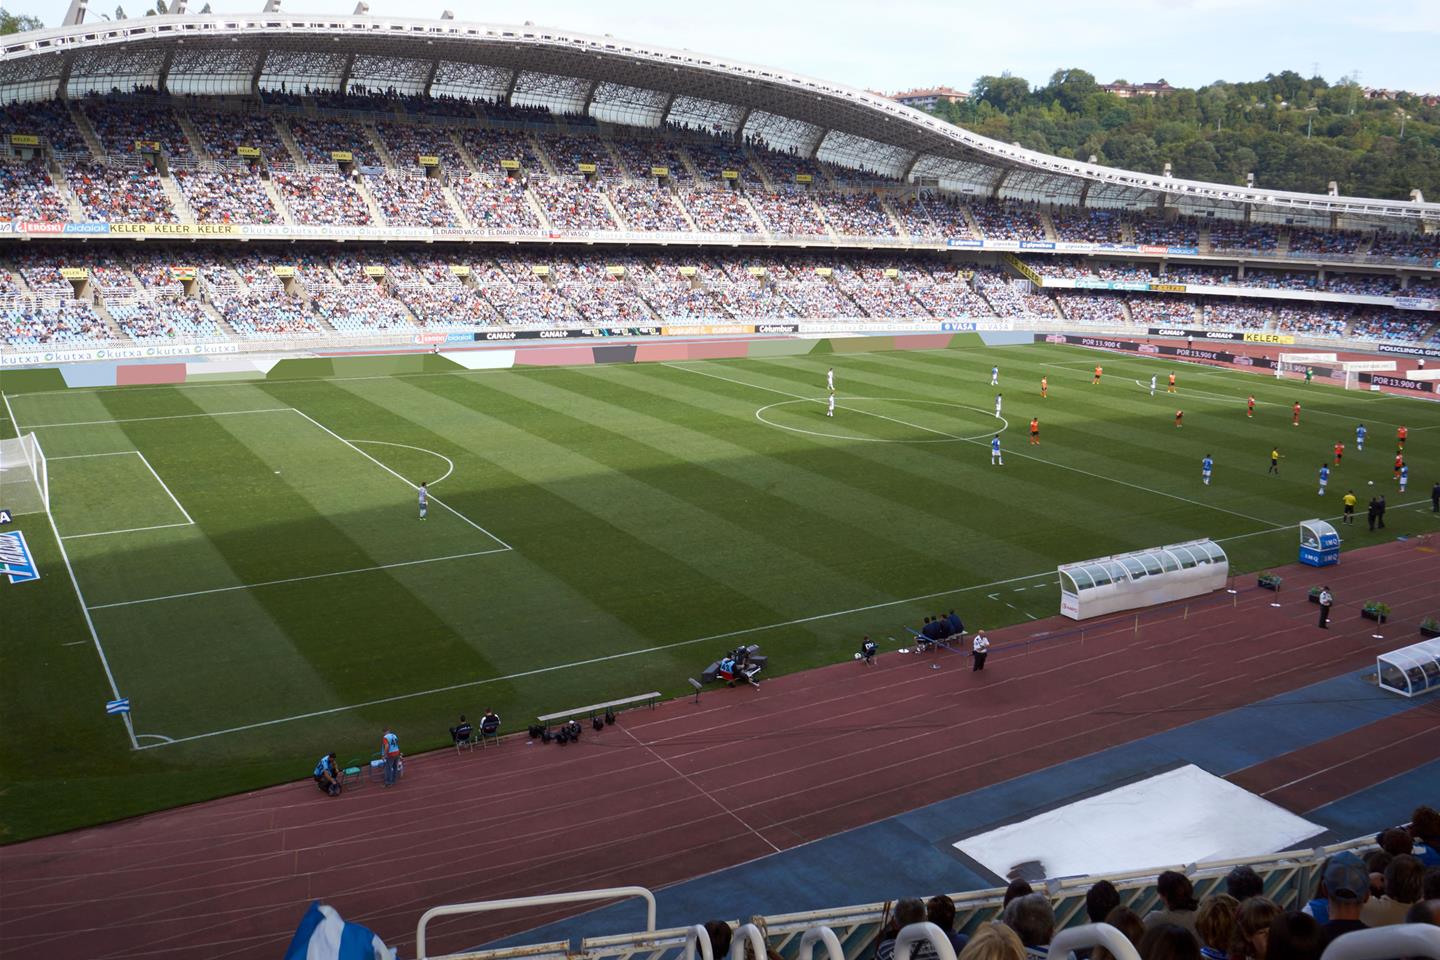 Real Sociedad Tickets | Buy or Sell Tickets for Real Sociedad 2020 Fixtures - viagogo1440 x 960